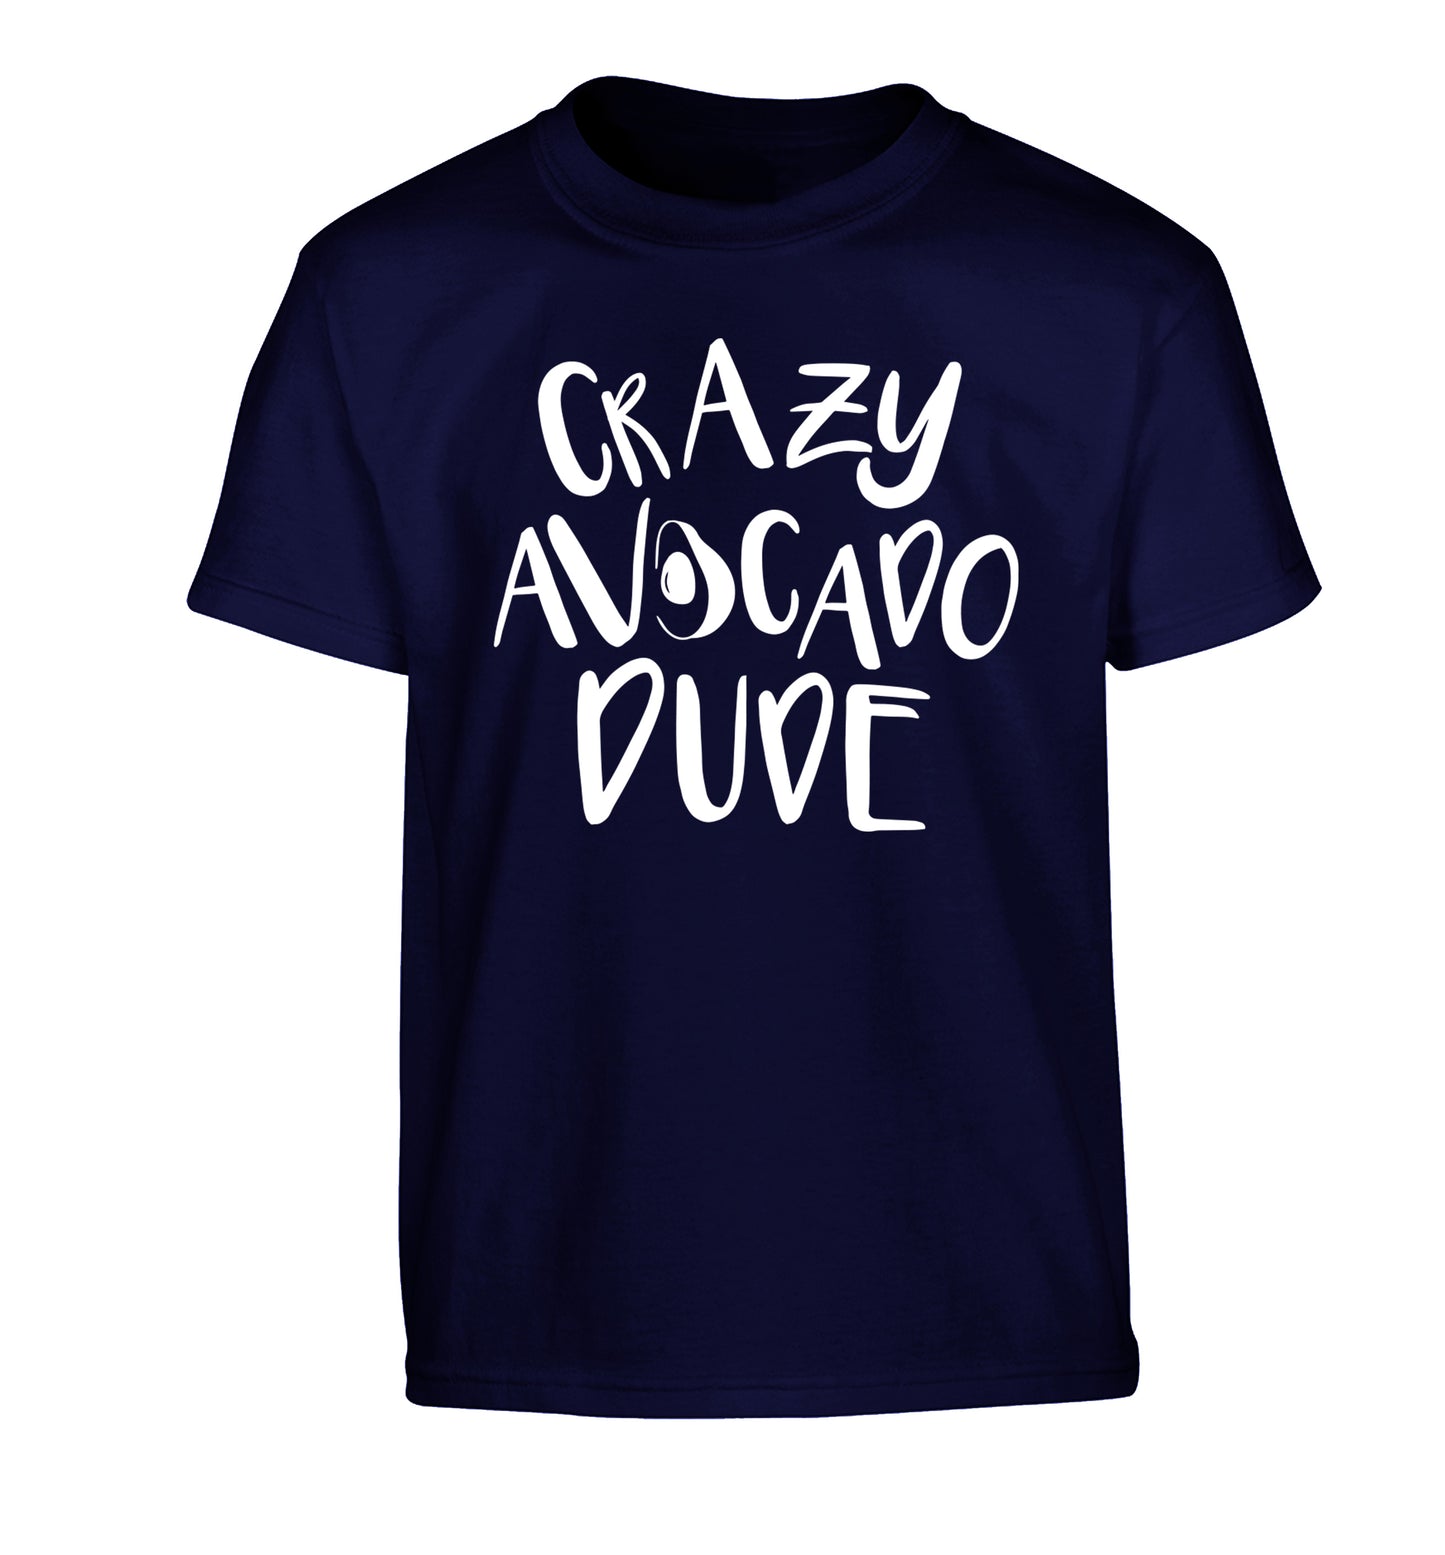 Crazy avocado dude Children's navy Tshirt 12-14 Years